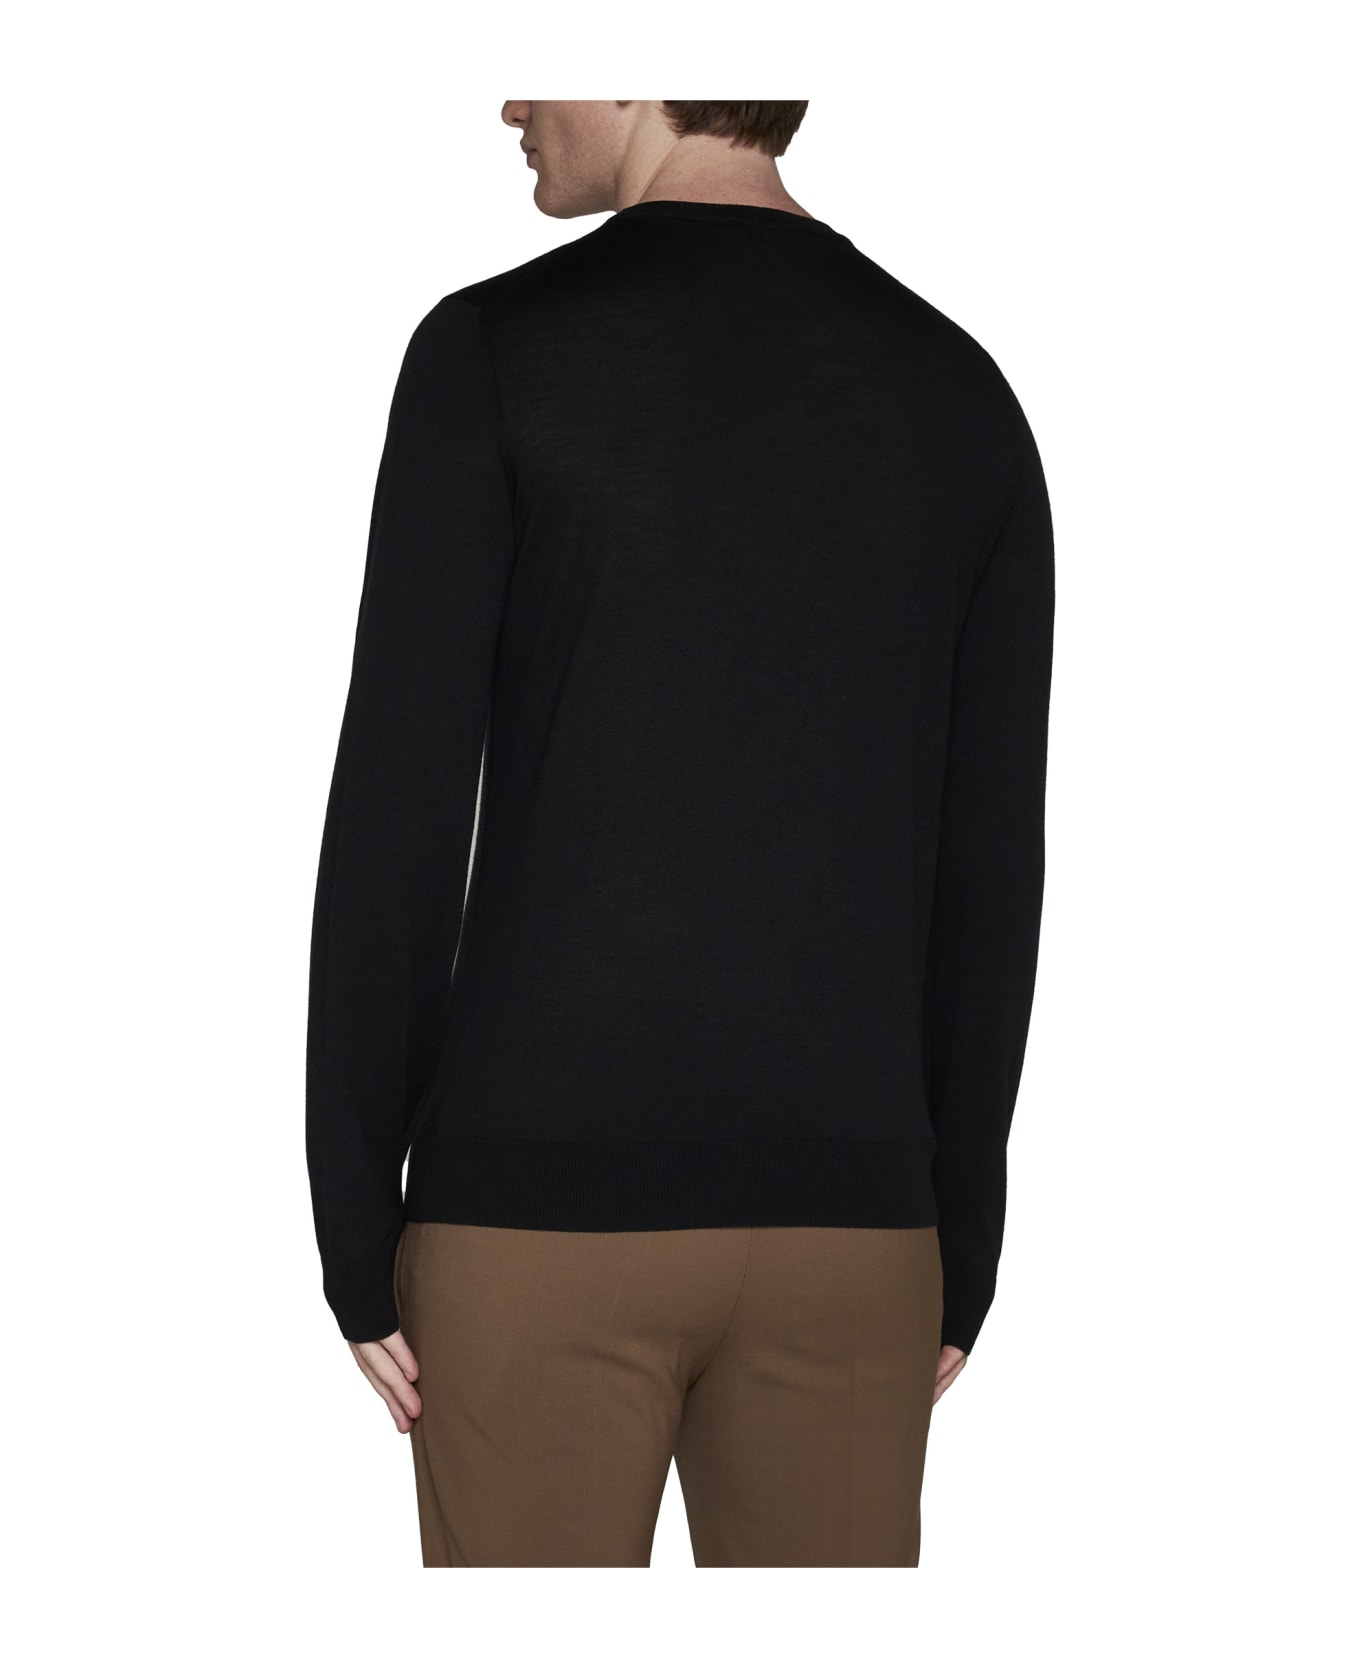 Piacenza Cashmere Sweater - Black